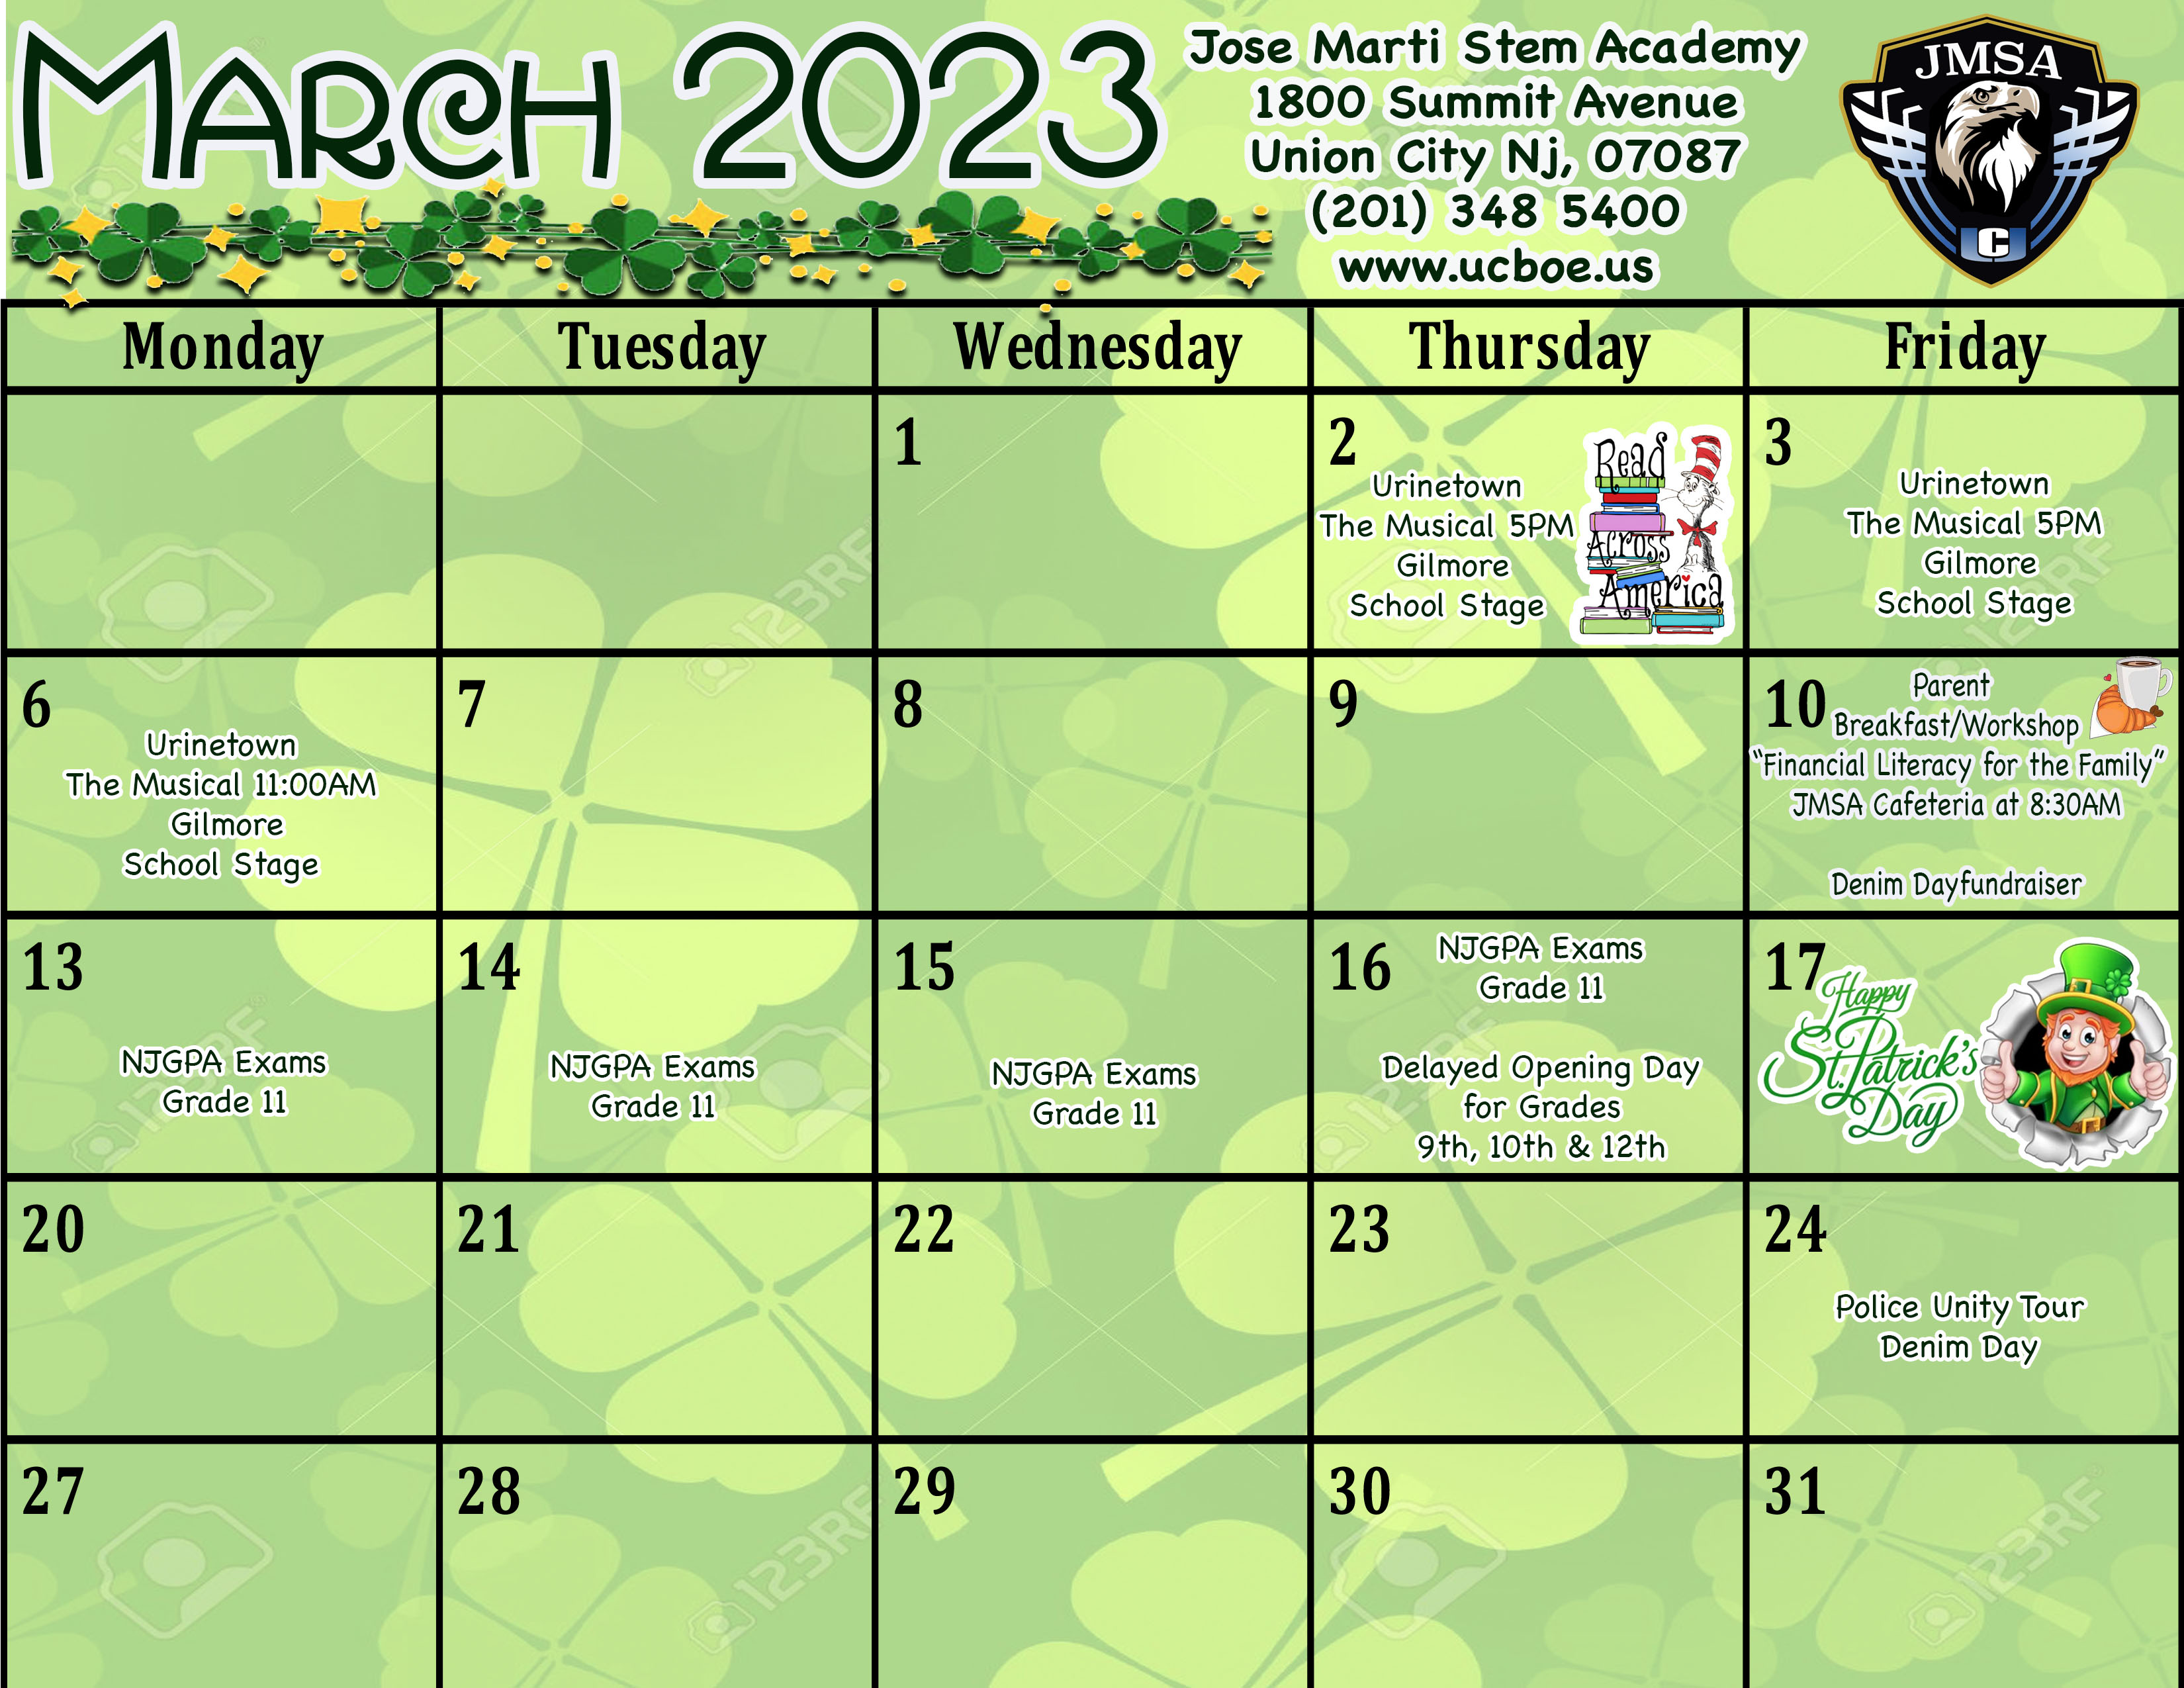 March 2023 Calendar-Jose Martí STEM Academy